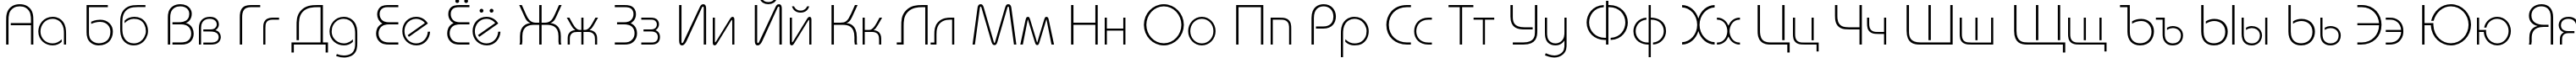 Пример написания русского алфавита шрифтом BauhausC Light